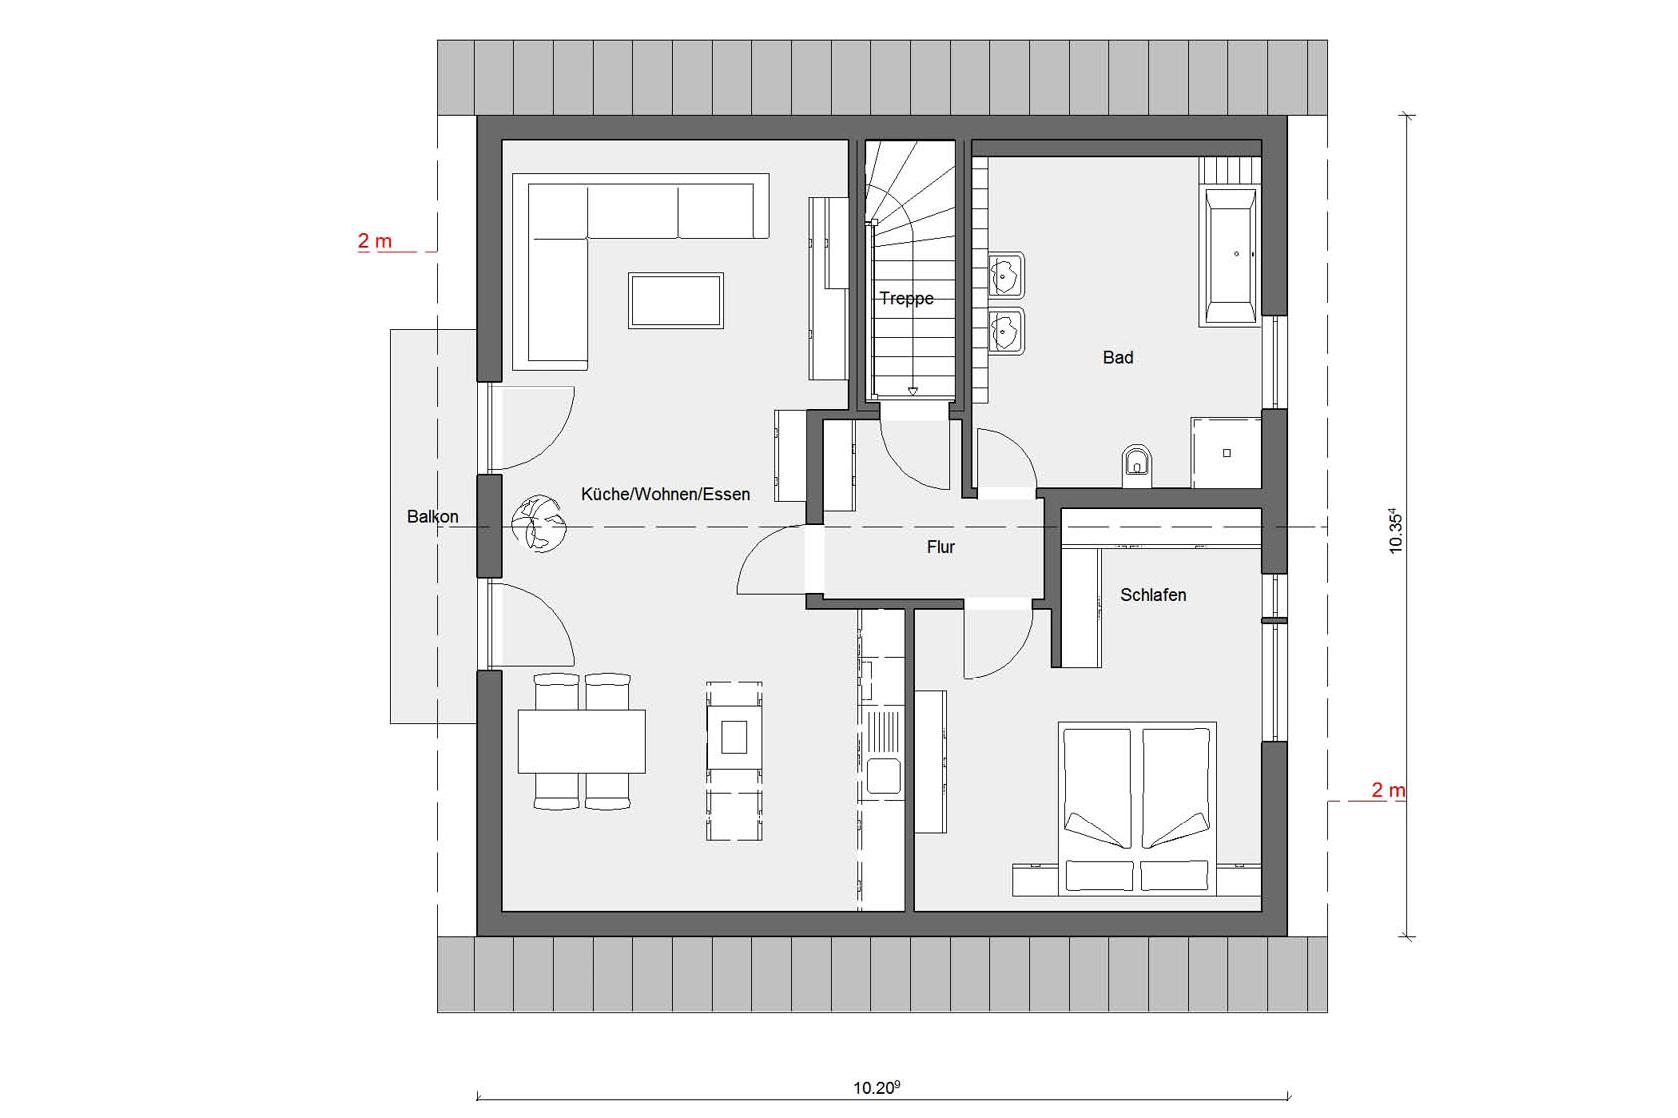 Plan d'étage grenier M 15-179.2 Maison individuelle avec studio